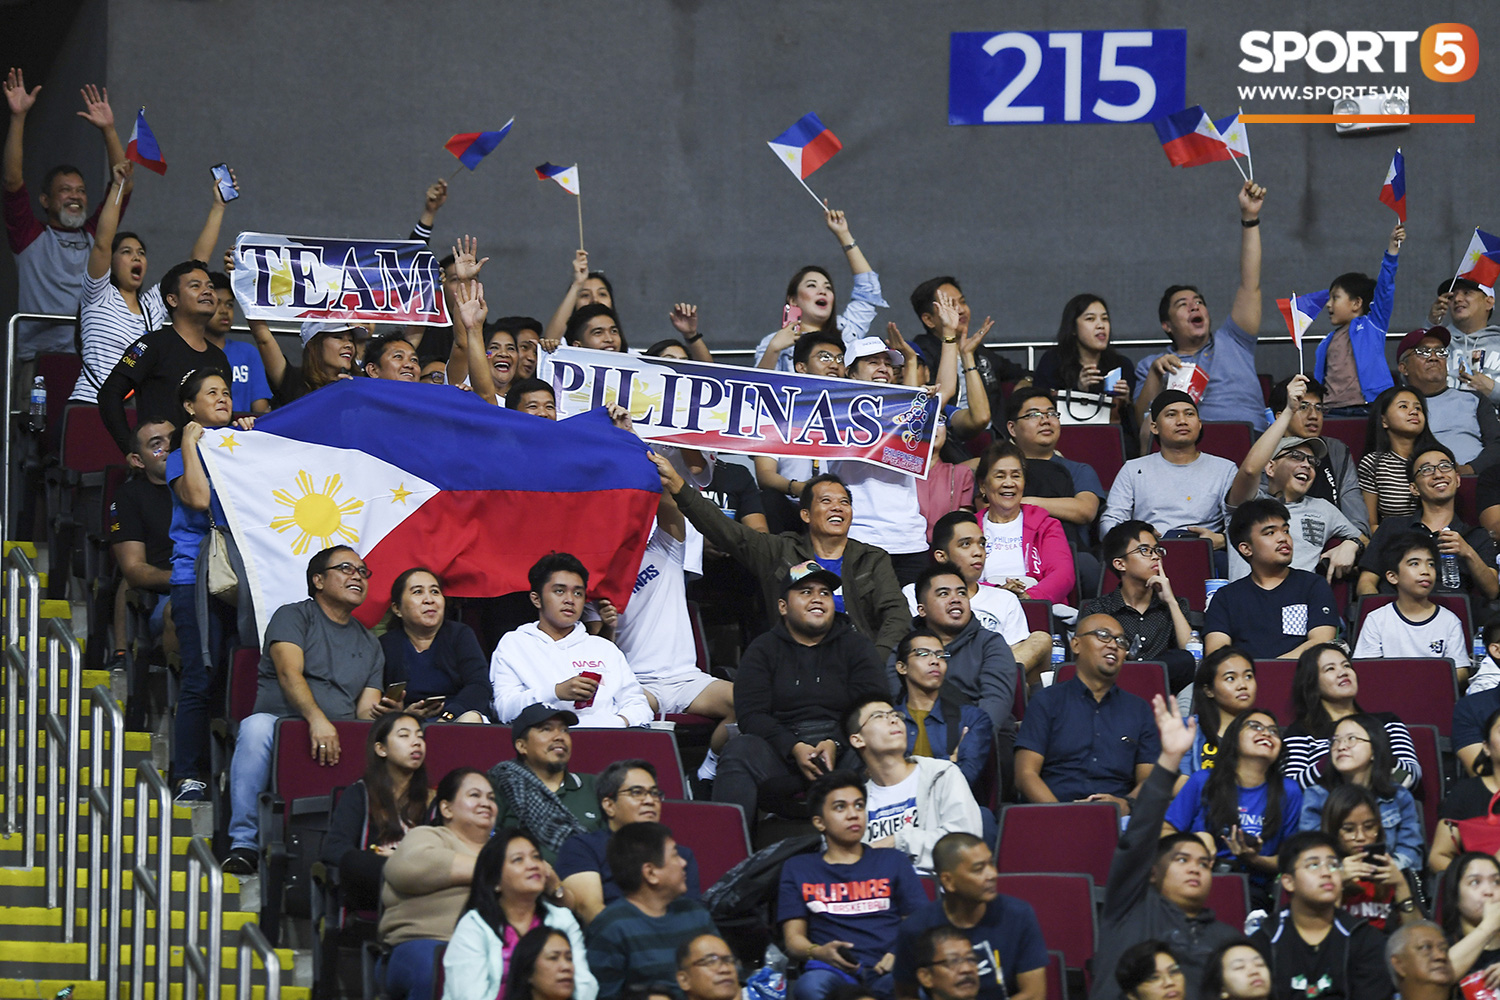 Choáng ngợp trước vẻ hào nhoáng của nhà thi đấu và sức ép từ 15.000 CĐV chủ nhà Philippines mà tuyển bóng rổ Việt Nam phải đối mặt - Ảnh 6.